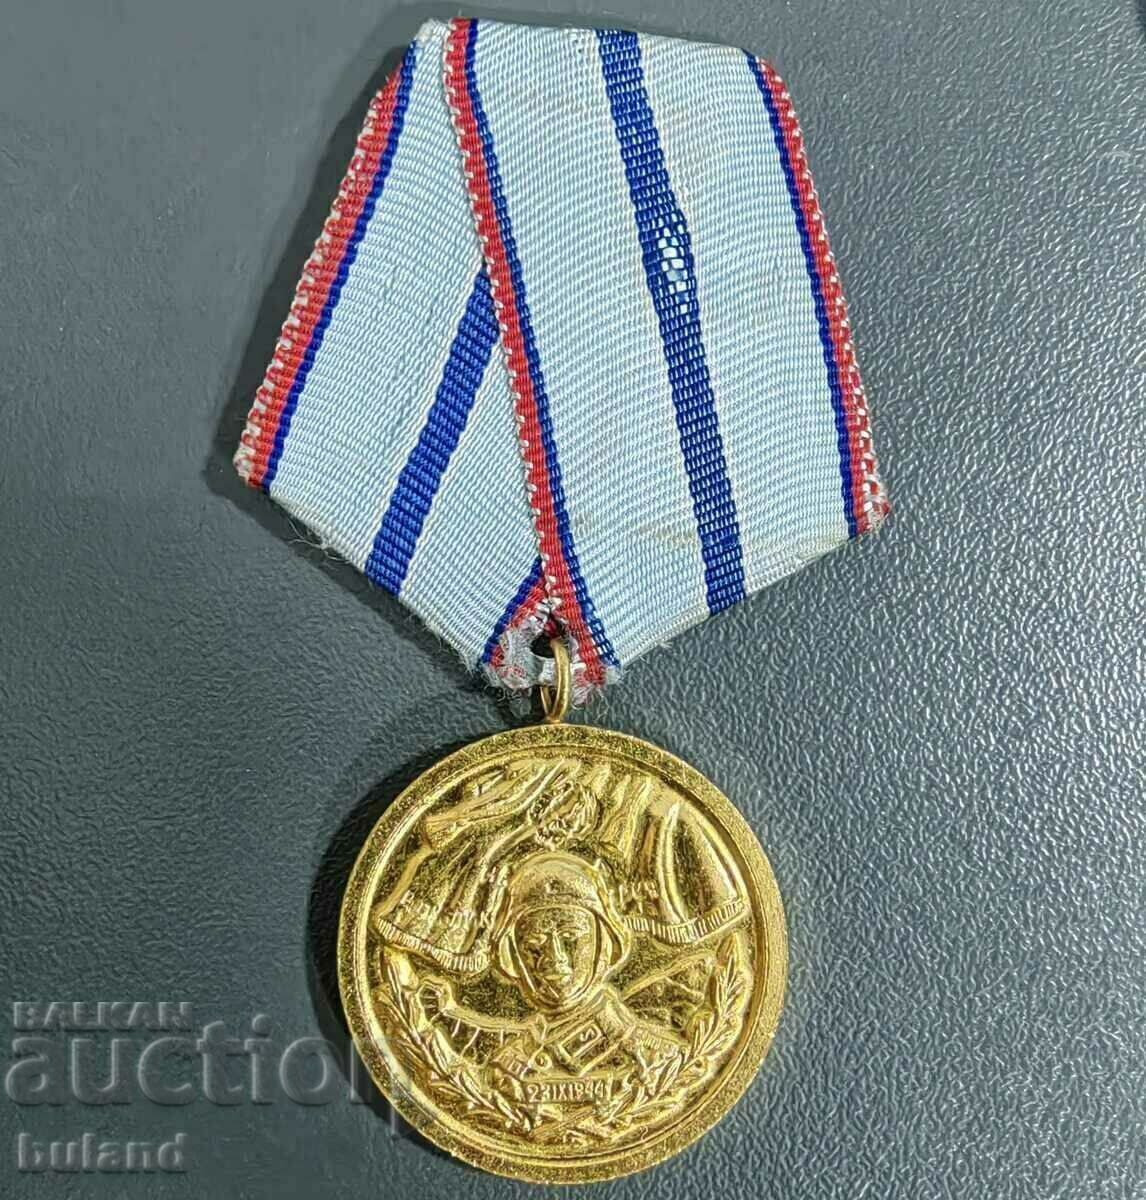 Βουλγαρικό Κοινωνικό Μετάλλιο 20 χρόνια Άψογη υπηρεσία στον στρατό BNA NRB